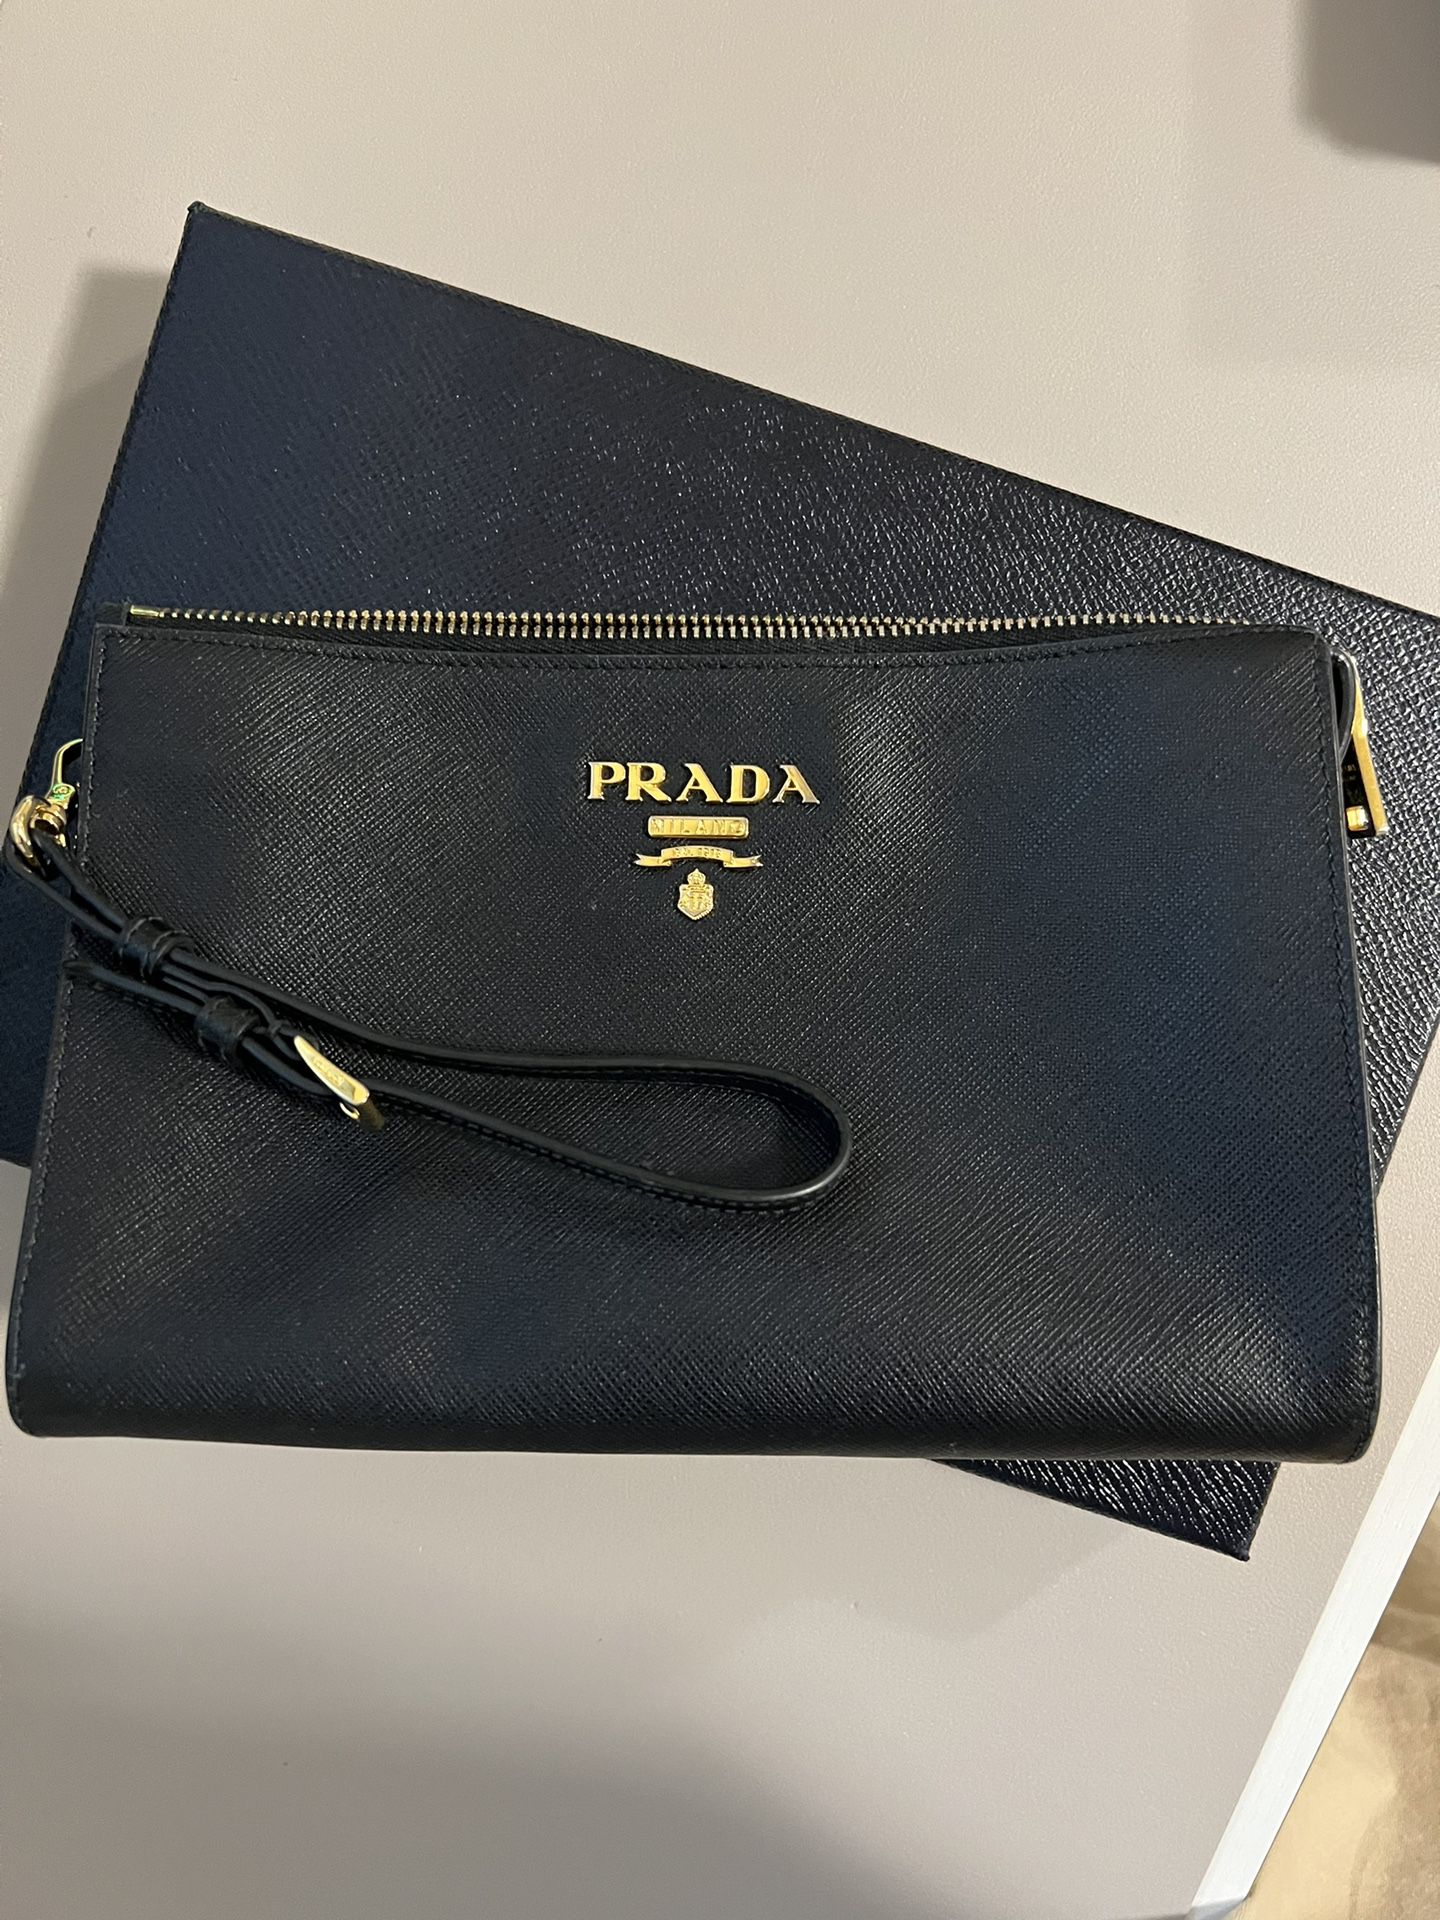 Prada Saffiano leather pouch - Gold Logo  (in The Box)